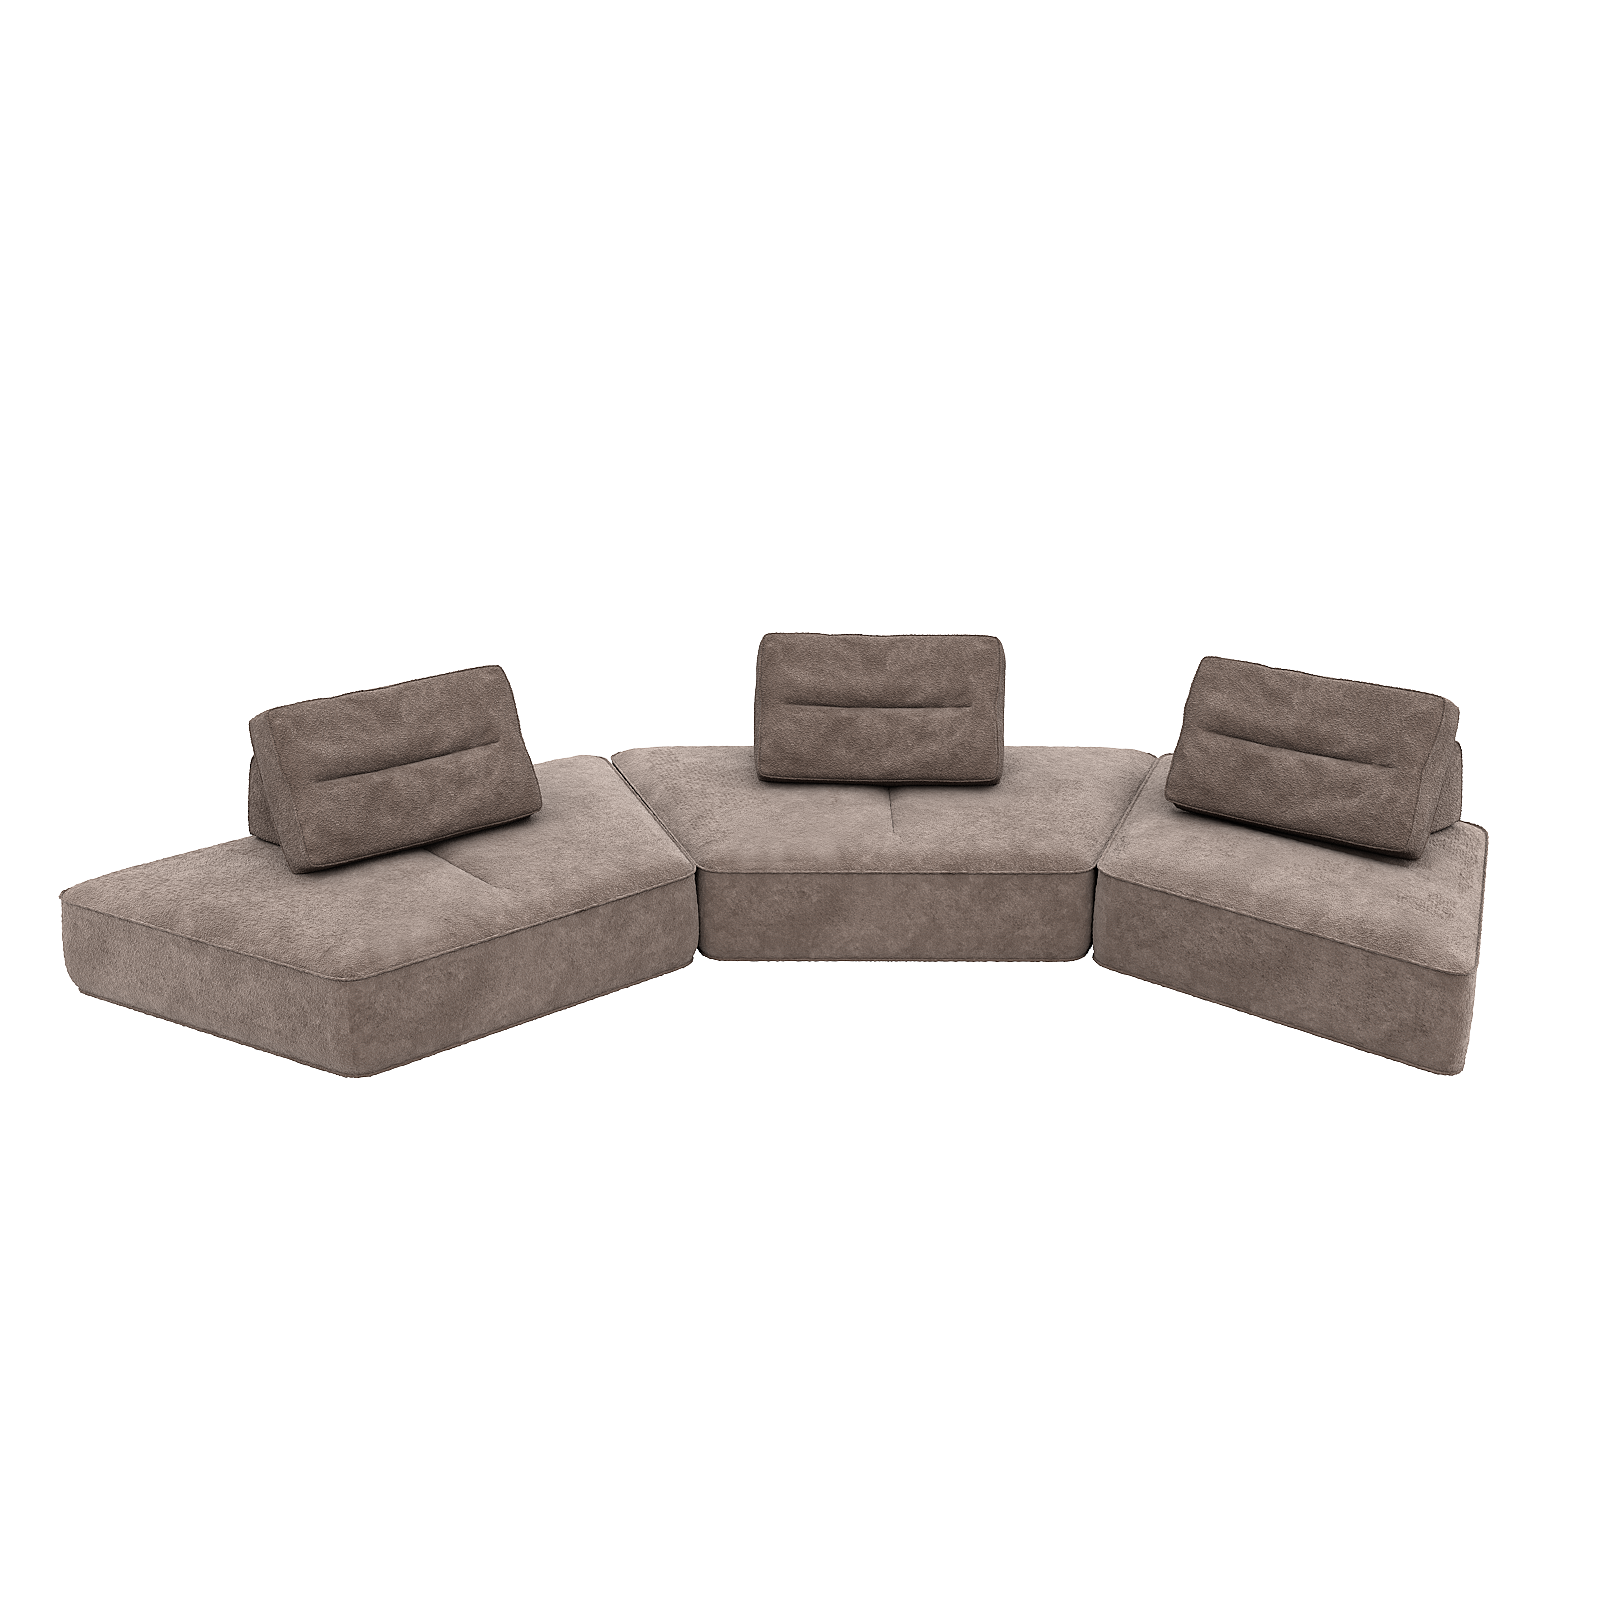 9-lagiges Sofa, dick, modular 